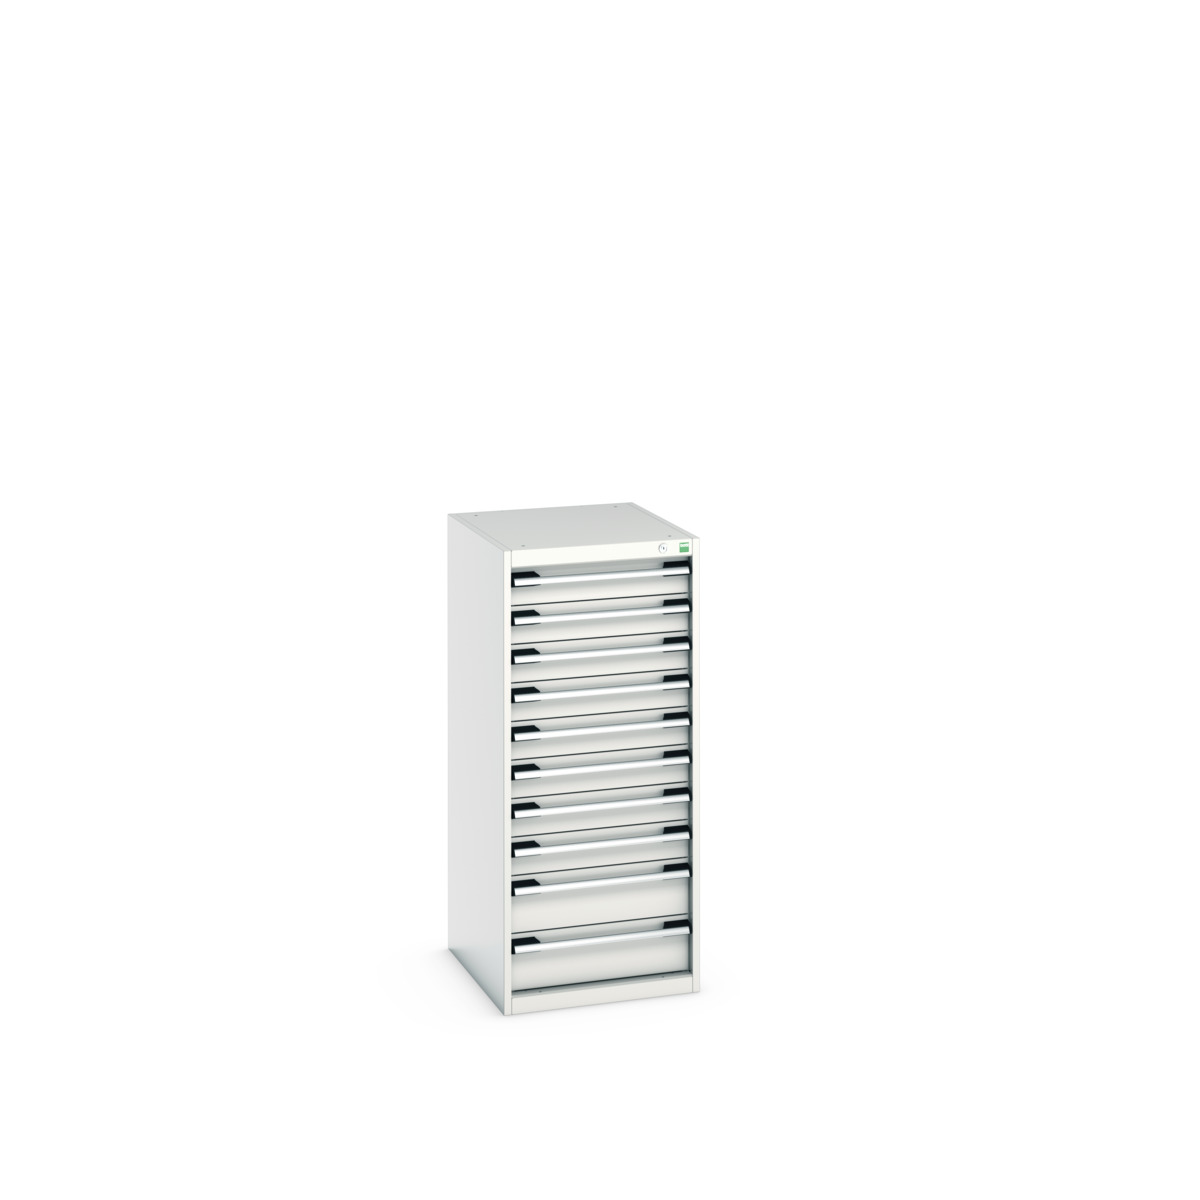 40018073.16V - cubio drawer cabinet